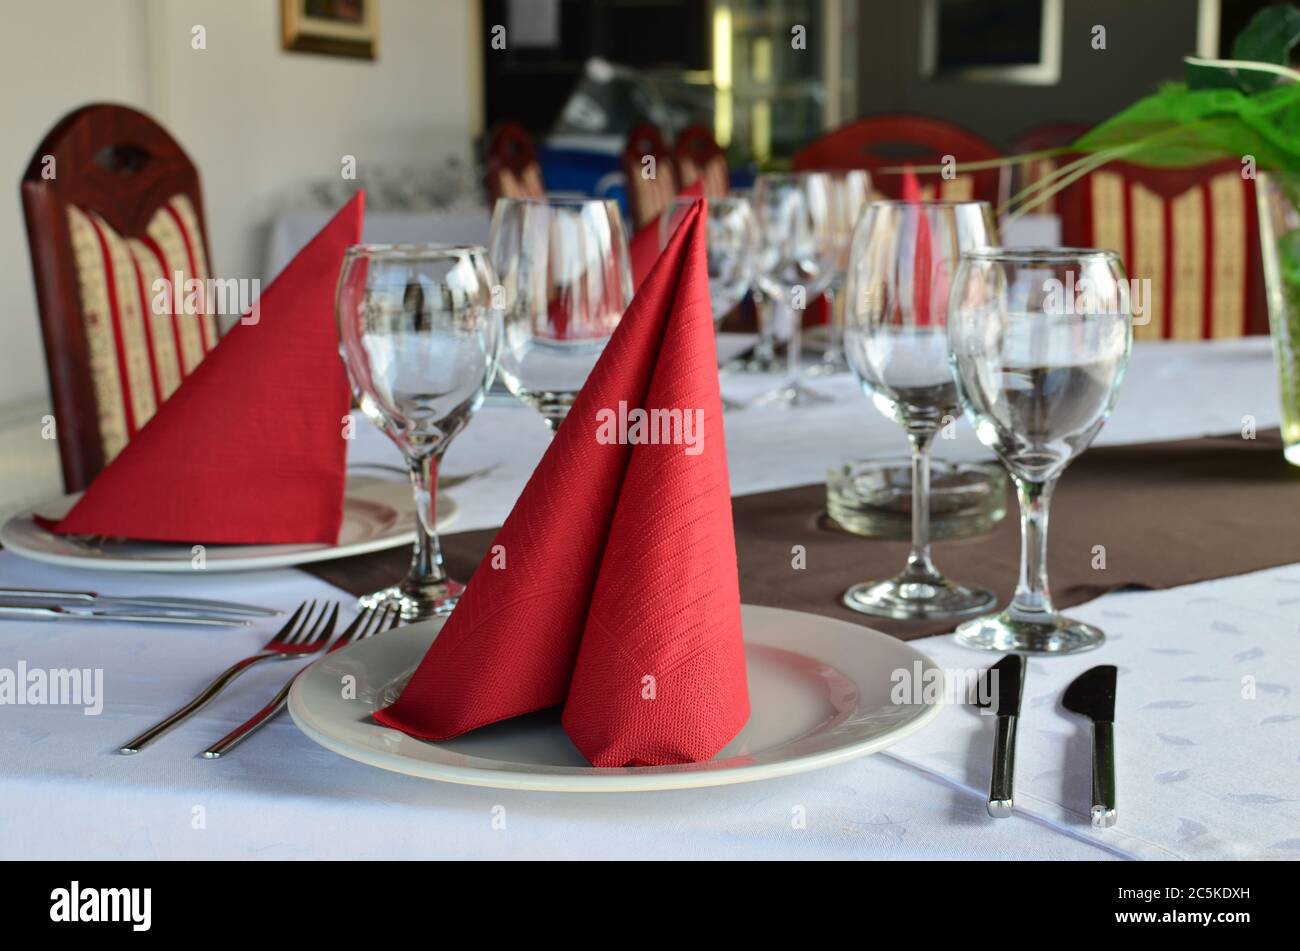 Table de restaurant posée et décorée, verres vides, assiettes, fourchettes et couteaux, serviettes rouges et nappes blanches Banque D'Images